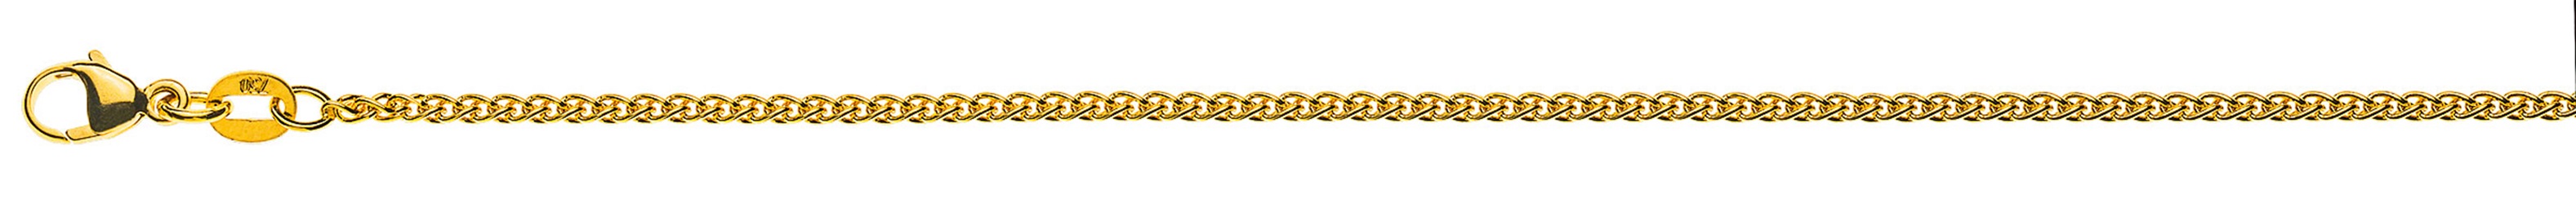 AURONOS Prestige Halskette Gelbgold 18K Zopfkette 40cm 1.6mm